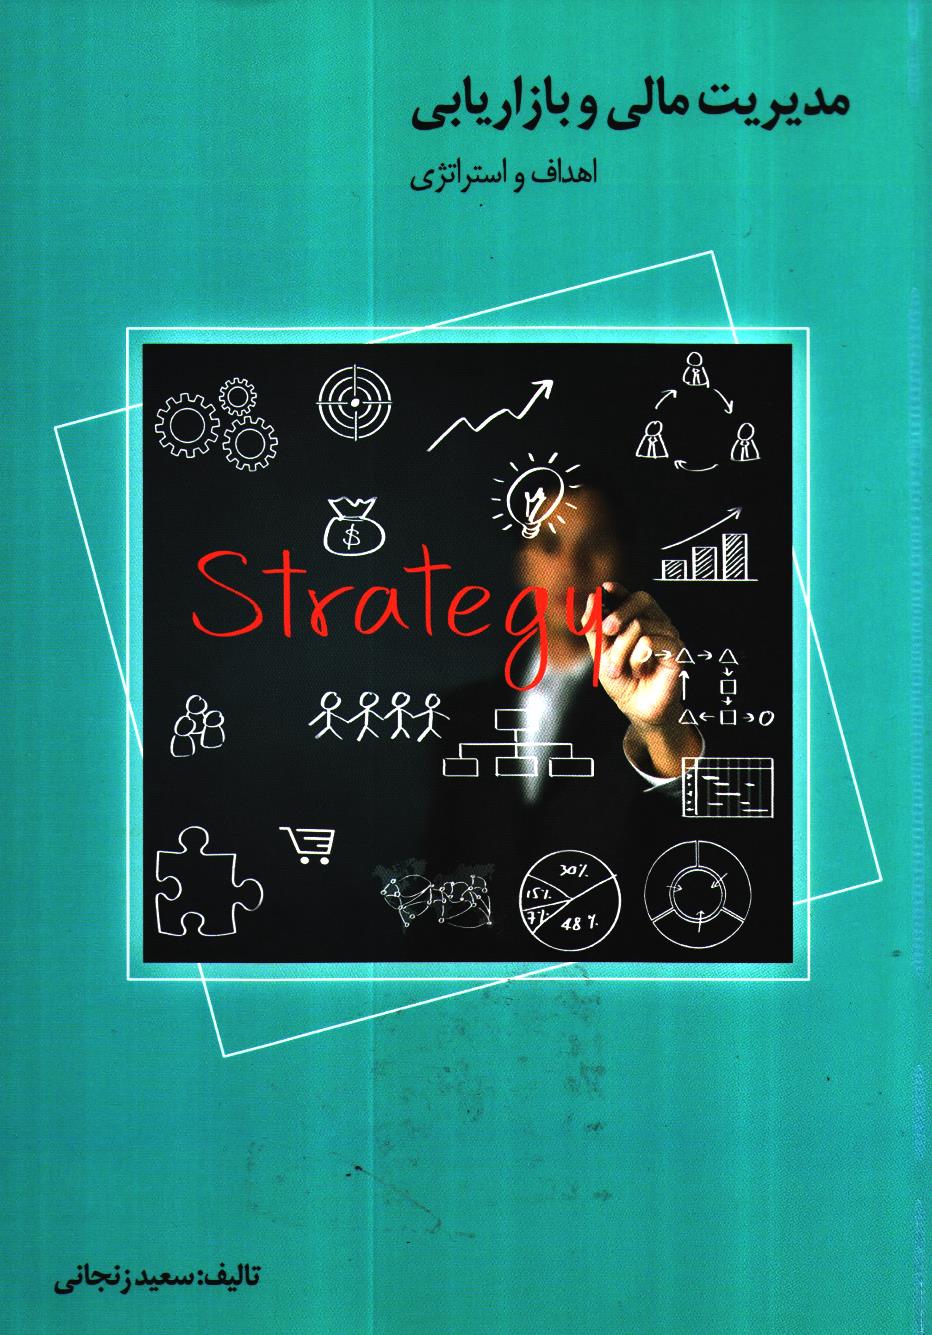 عکس شماره 1 مدیریت مالی و بازاریابی- اهداف و استراتژی